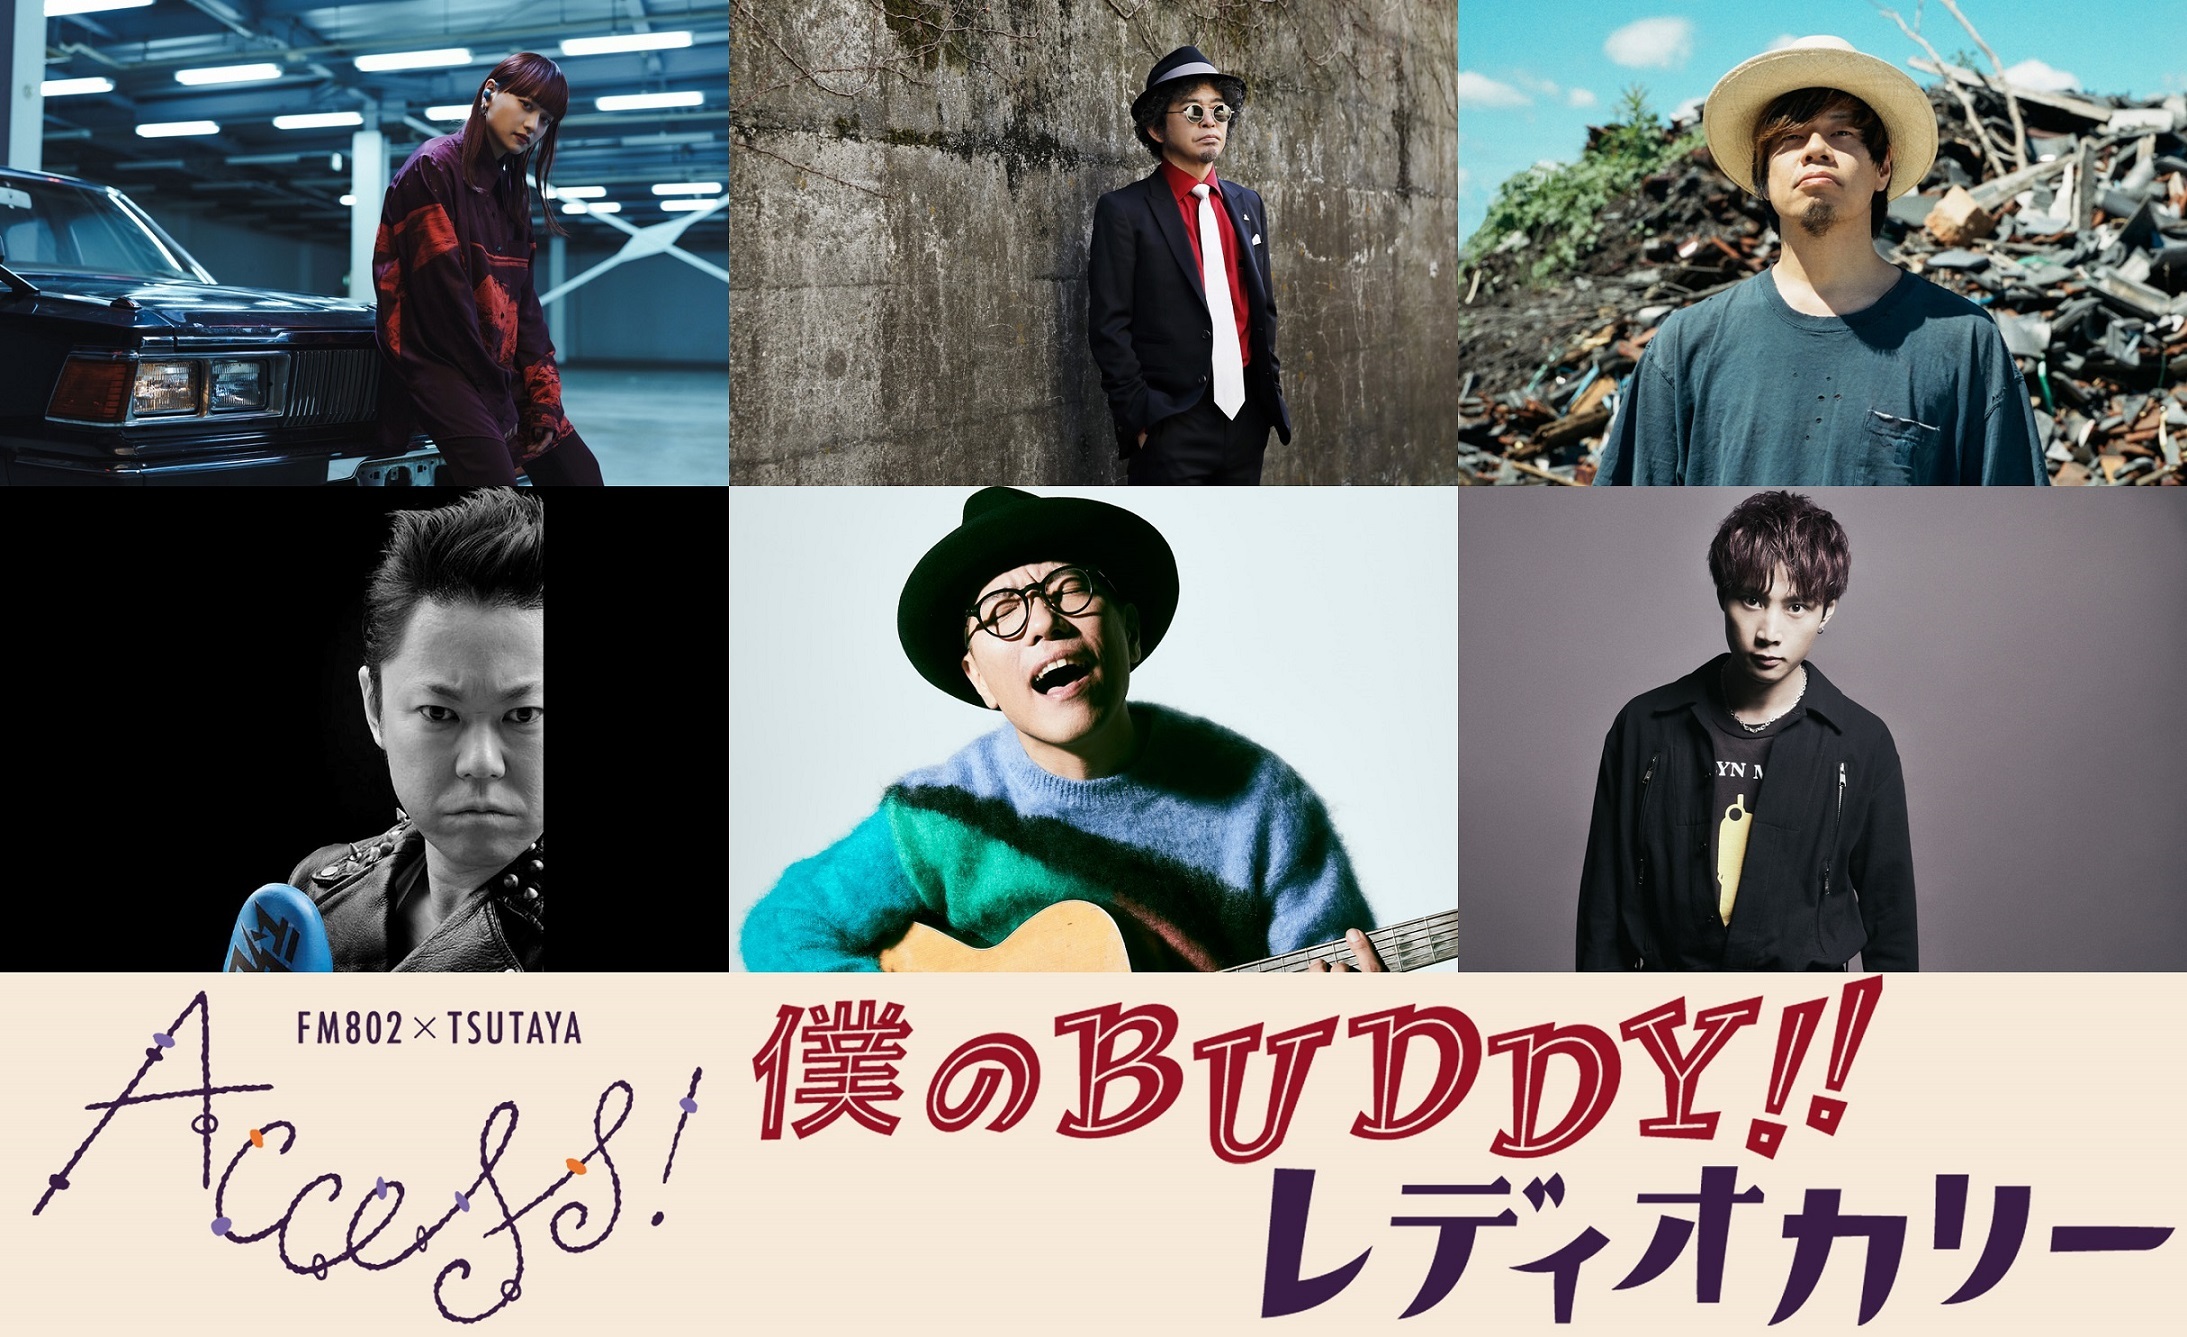 『FM802 × TSUTAYA ACCESS!』キャンペーンソング「僕のBUDDY!!」